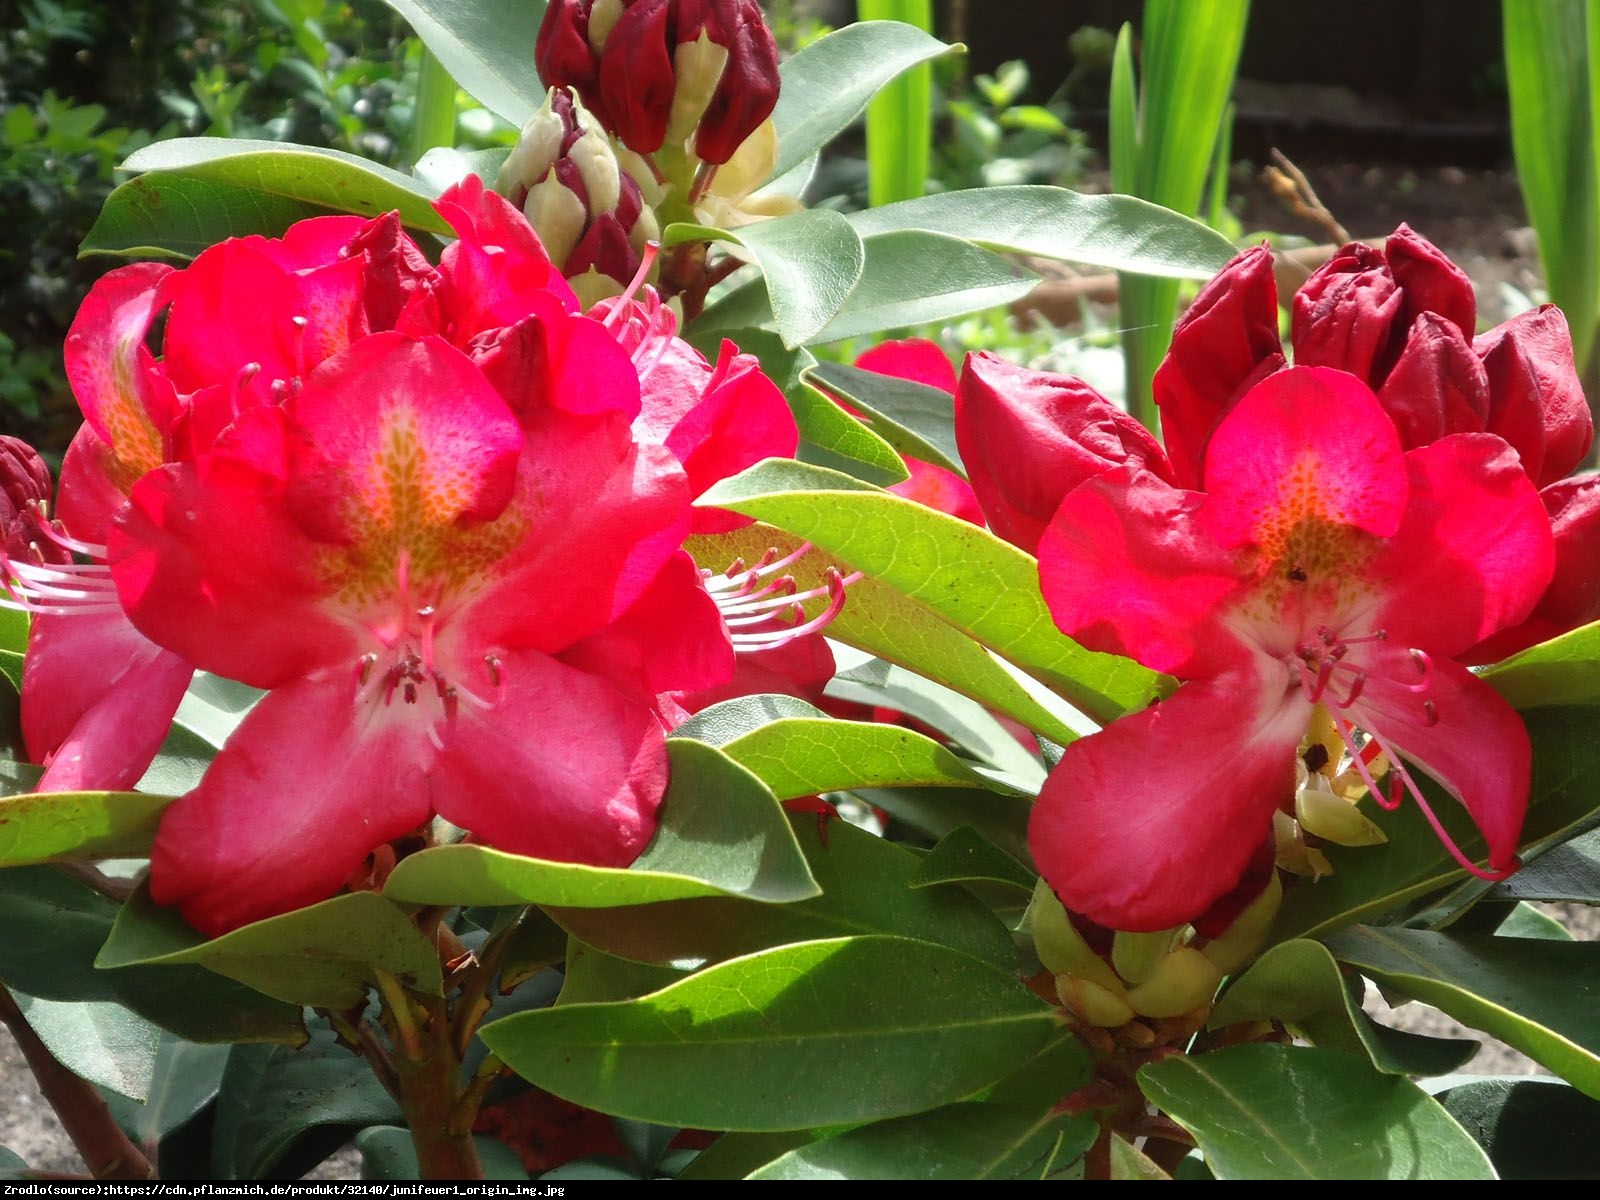 Różanecznik Junifeuer - Rhododendron Junifeuer